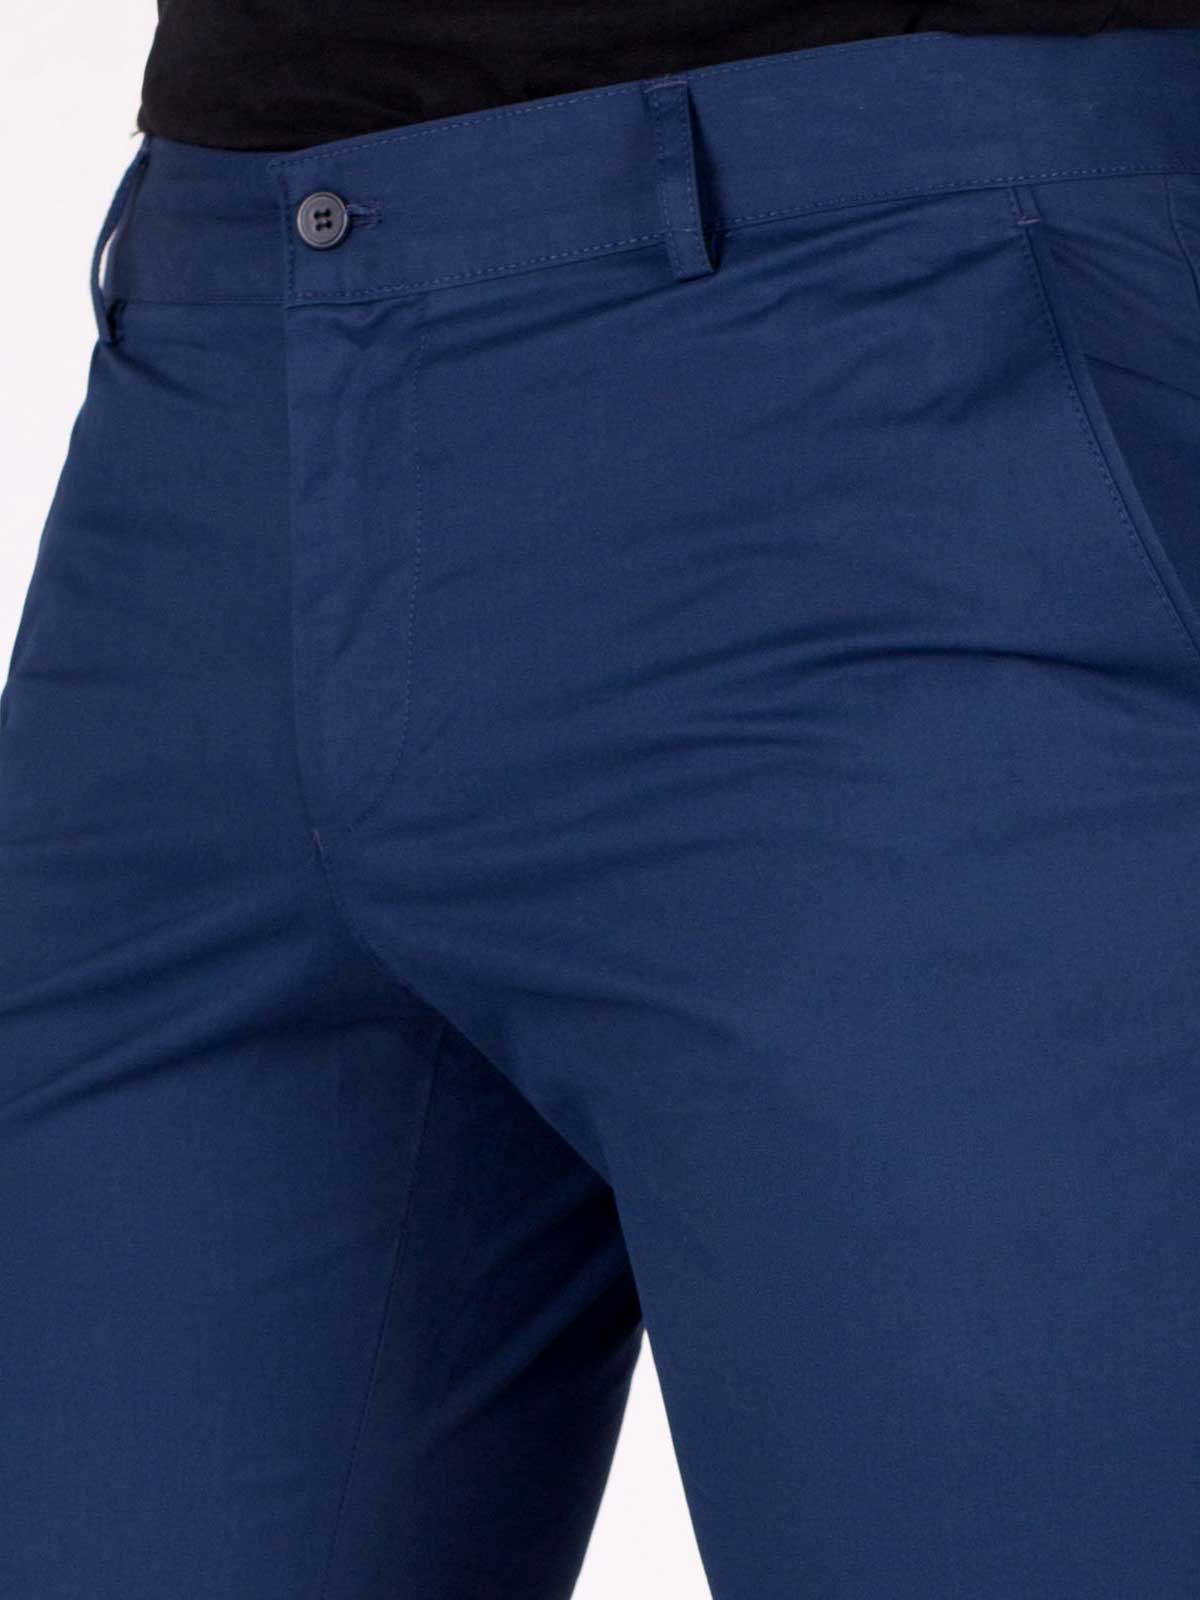 Втален панталон в синьо - 63188 29.00 лв img3